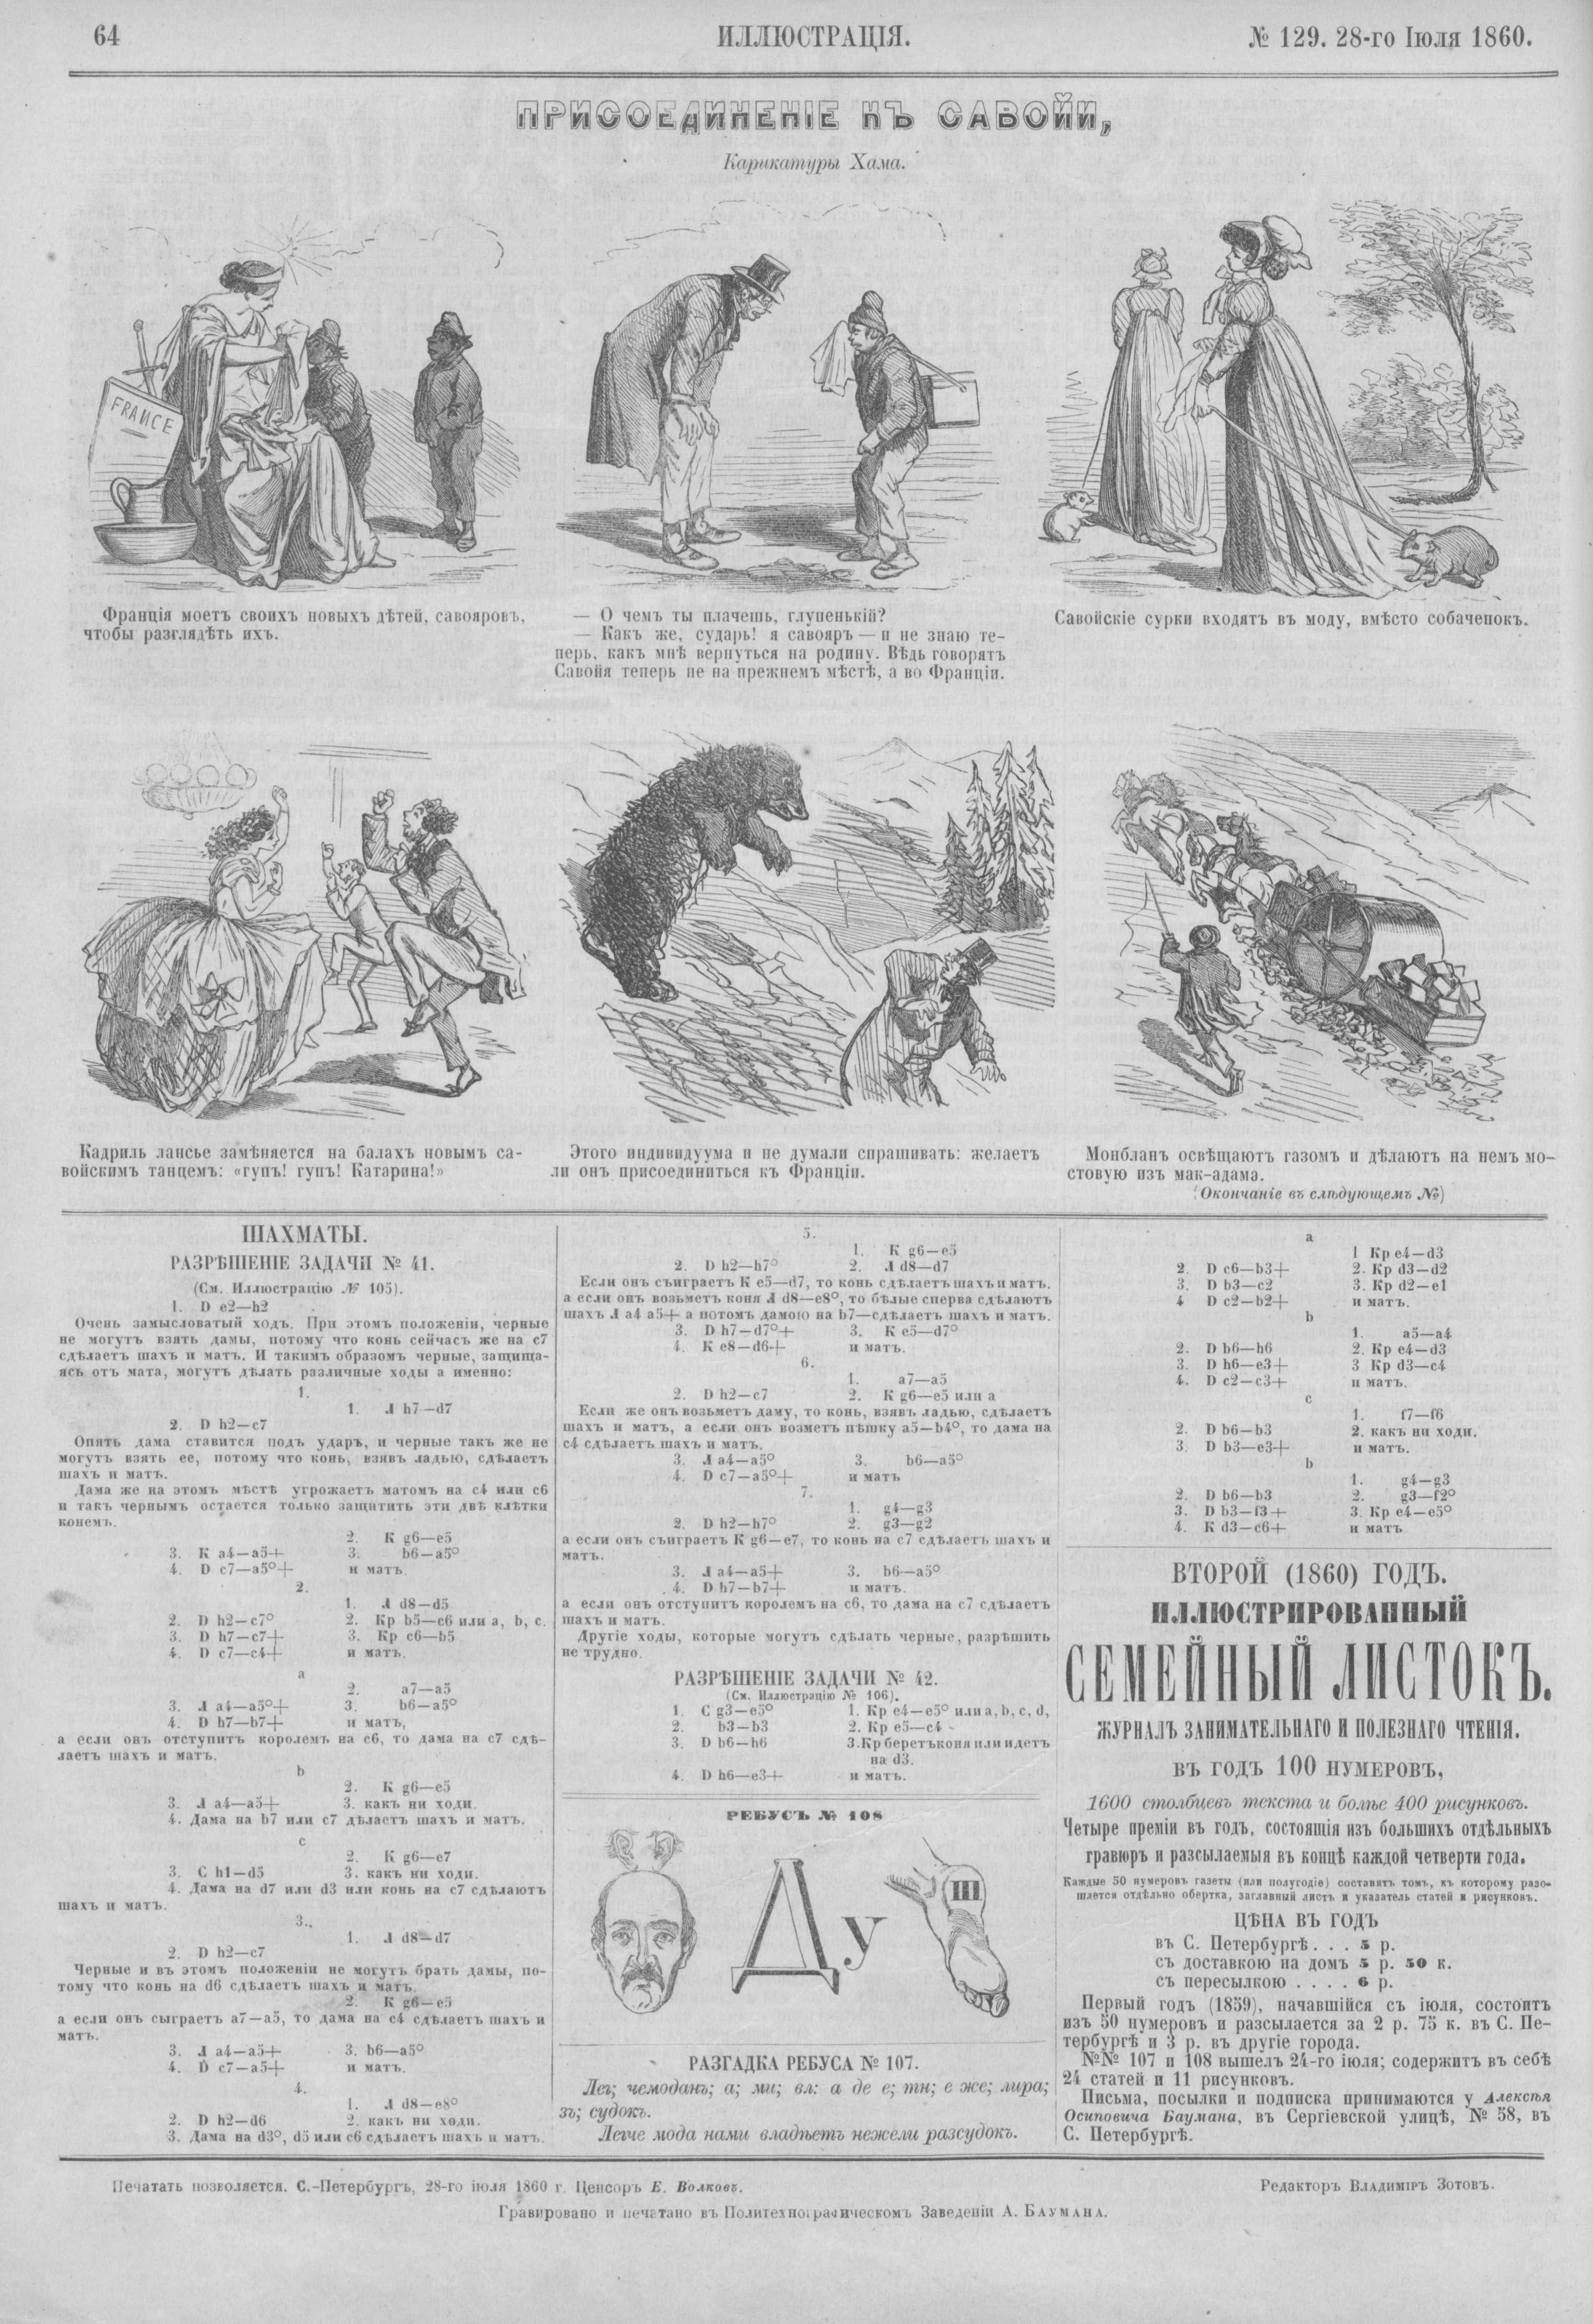 Cham. Присоединение к Савойе. Илл., 1860 №129, 28 июля. С. 64.jpg